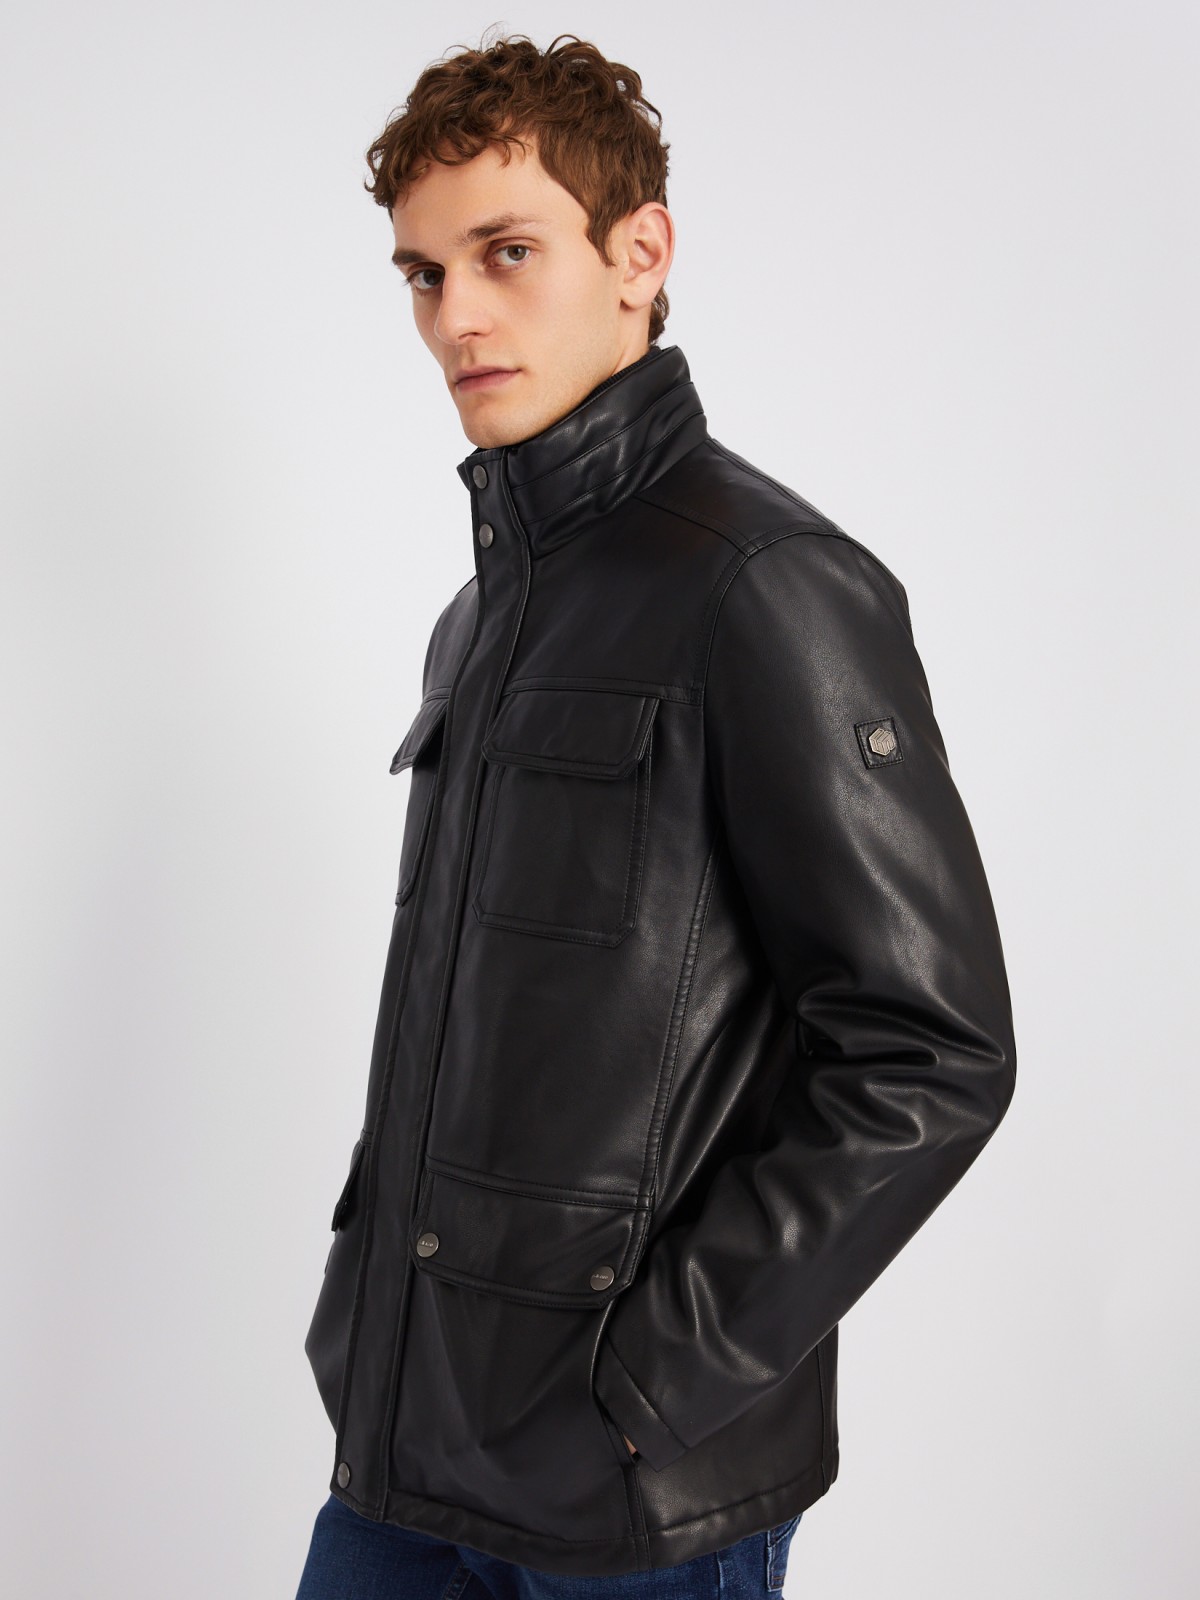 Утеплённая куртка из экокожи на синтепоне с воротником-стойкой zolla 013335102044, цвет черный, размер XXXL - фото 3